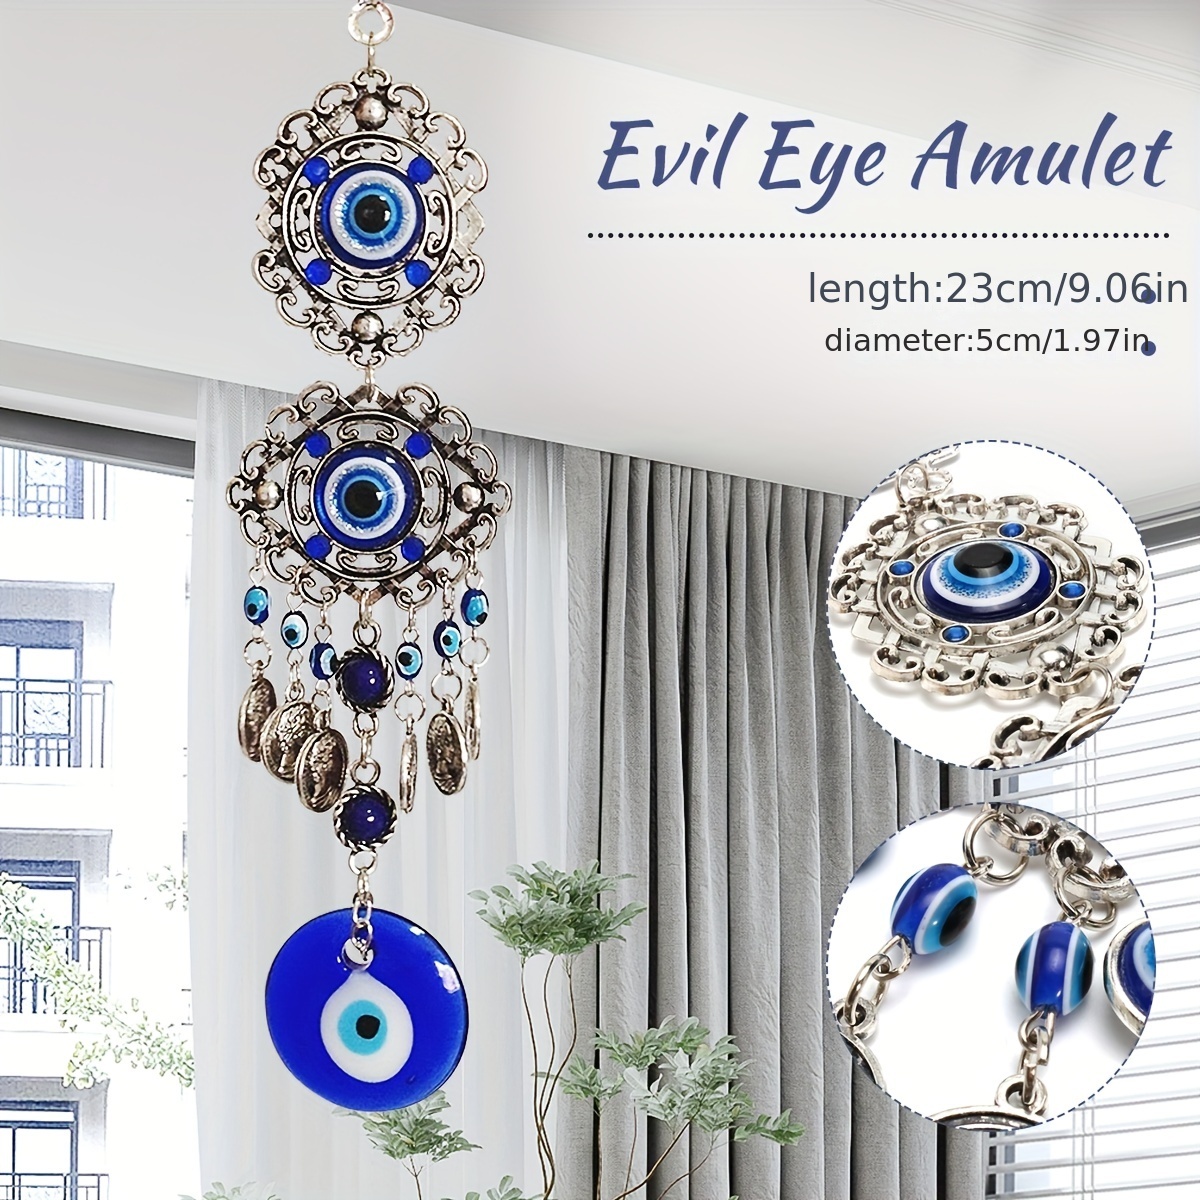  Fydun Türkisches blaues böses Auge Perlen Amulett Ornament mit  blauem Glas Anhänger für Home Lucky Protection Wandbehang Dekoration